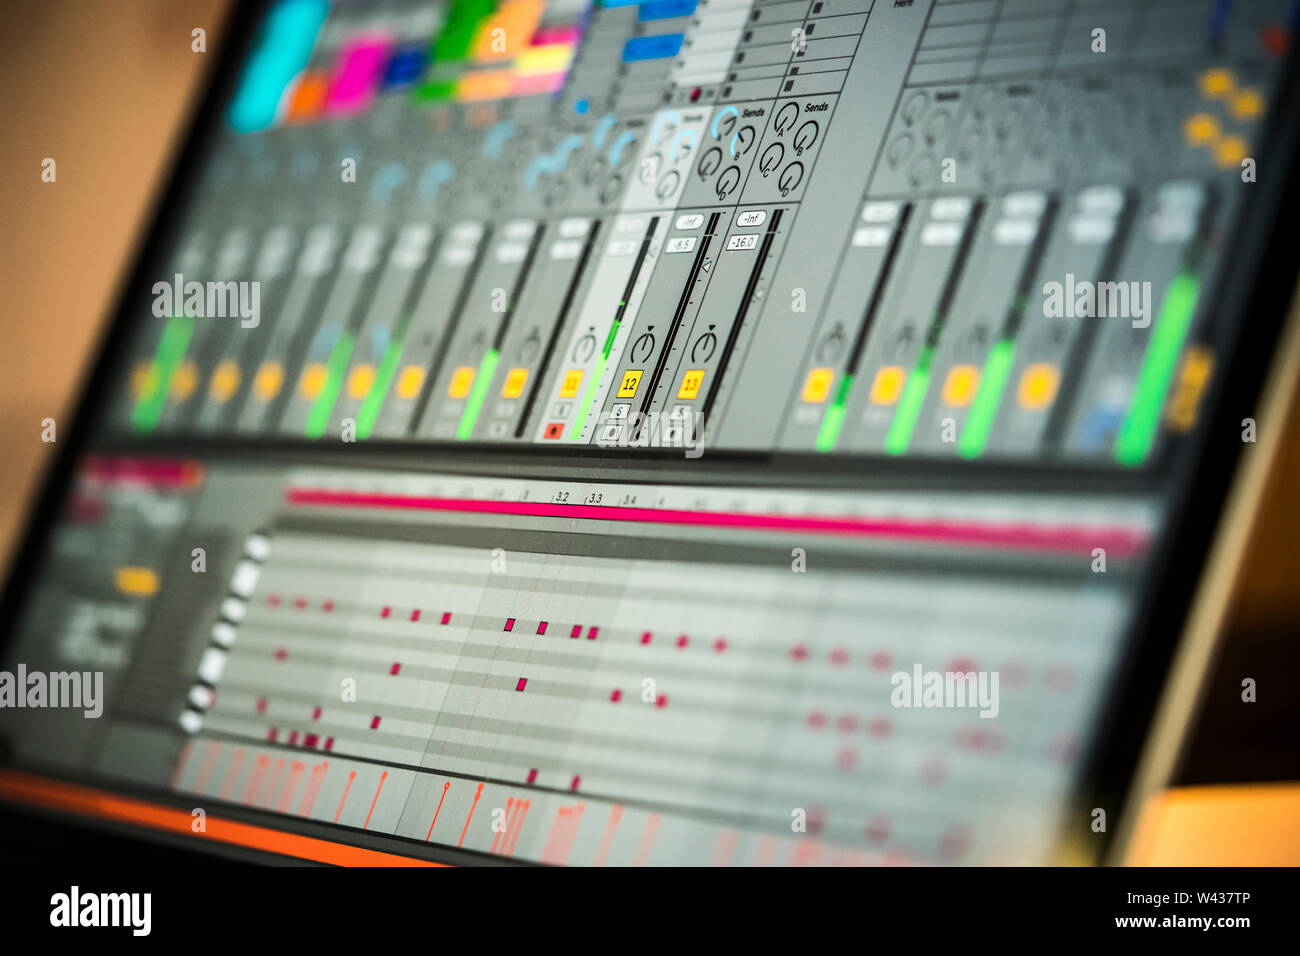 La musica elettronica la produzione in un home studio. Vista dettagliata del software Ableton Live su un Macbook Apple computer portatile Foto Stock